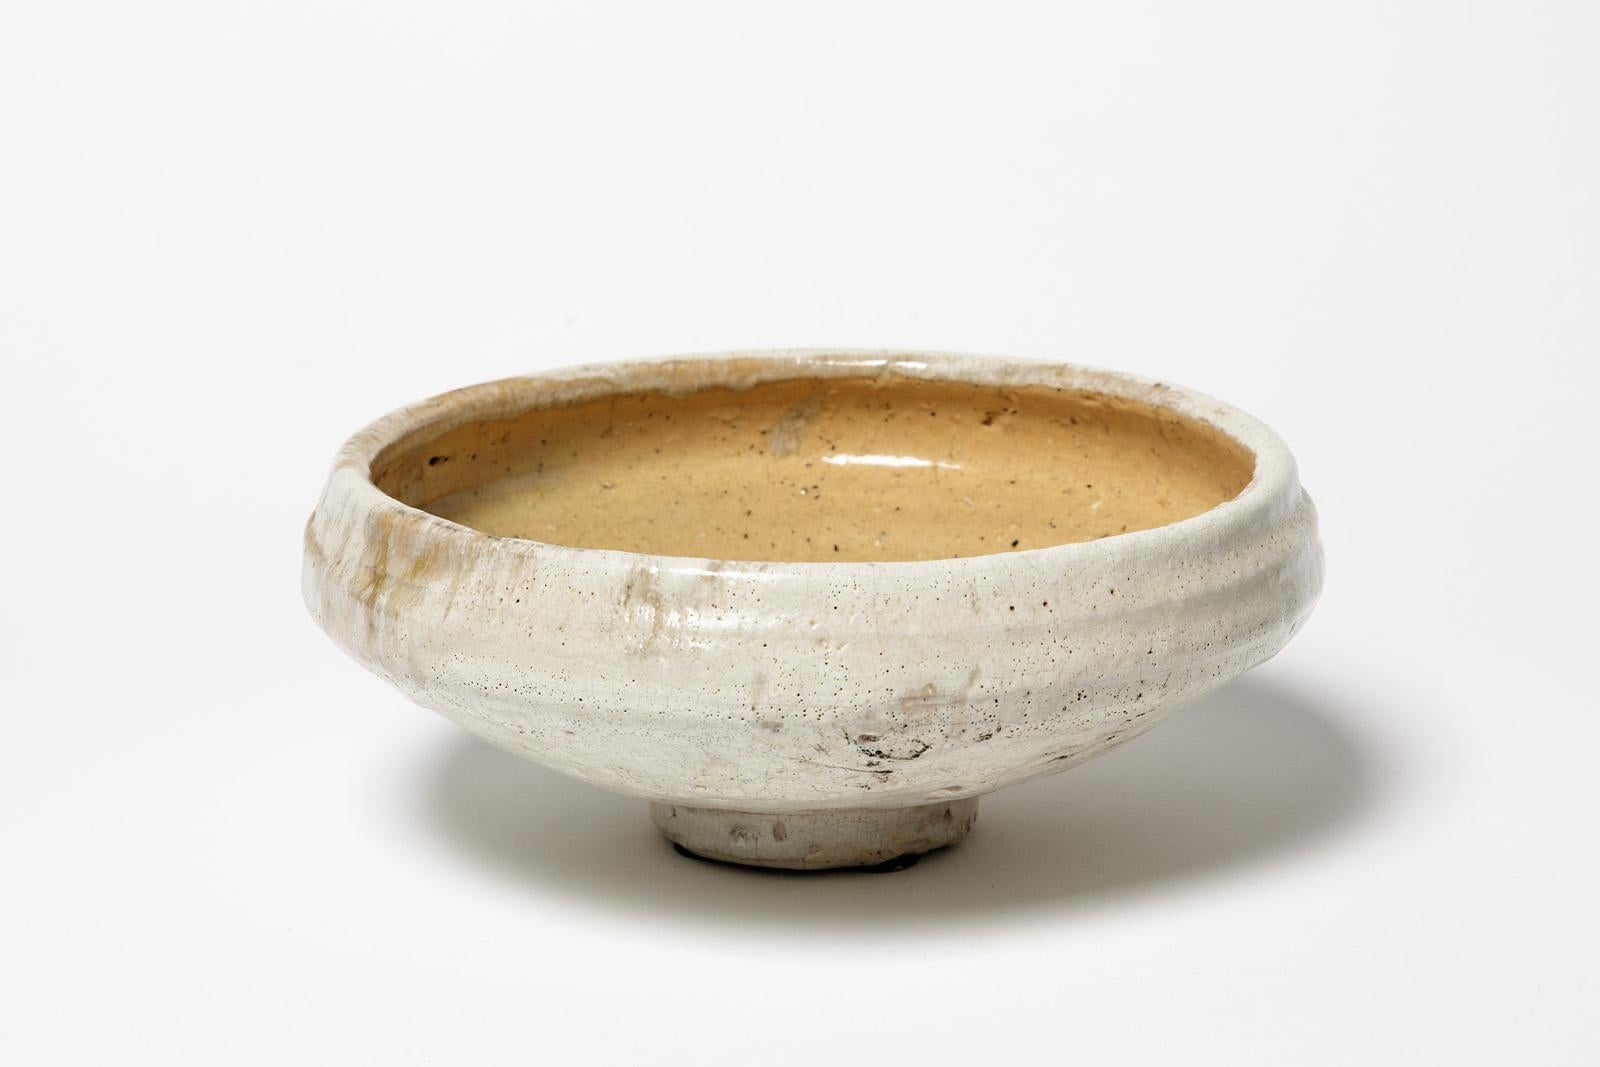 Un bol ou une tasse en céramique de Camille Virot.
Conditions d'origine parfaites.
Signé à la base.
Vers 1990-2000.
Pièce unique.